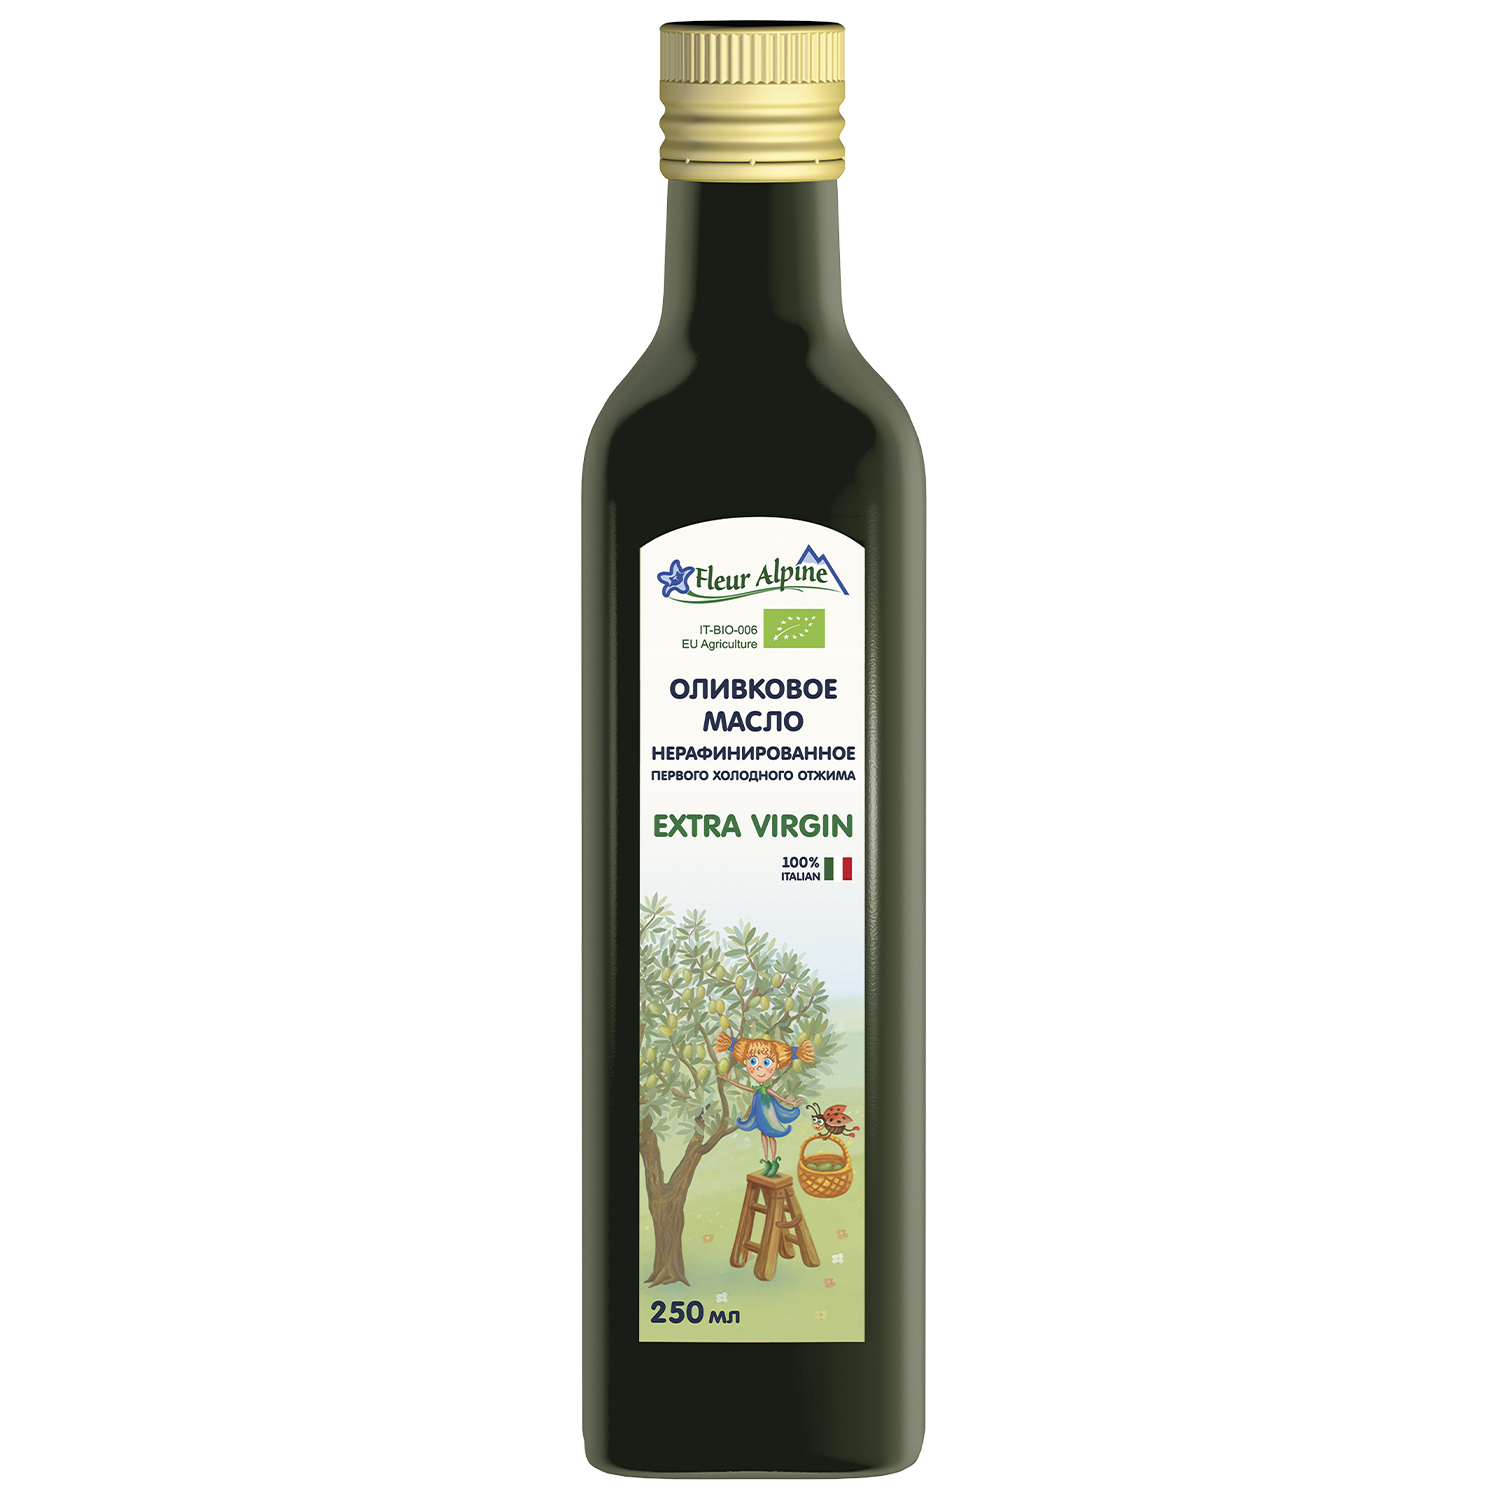 Оливковое масло детское Fleur Alpine Extra Virgin, с 6 месяцев, 250 мл масло оливковое borges с жареным чесноком 0 2 л стеклянная бутылка